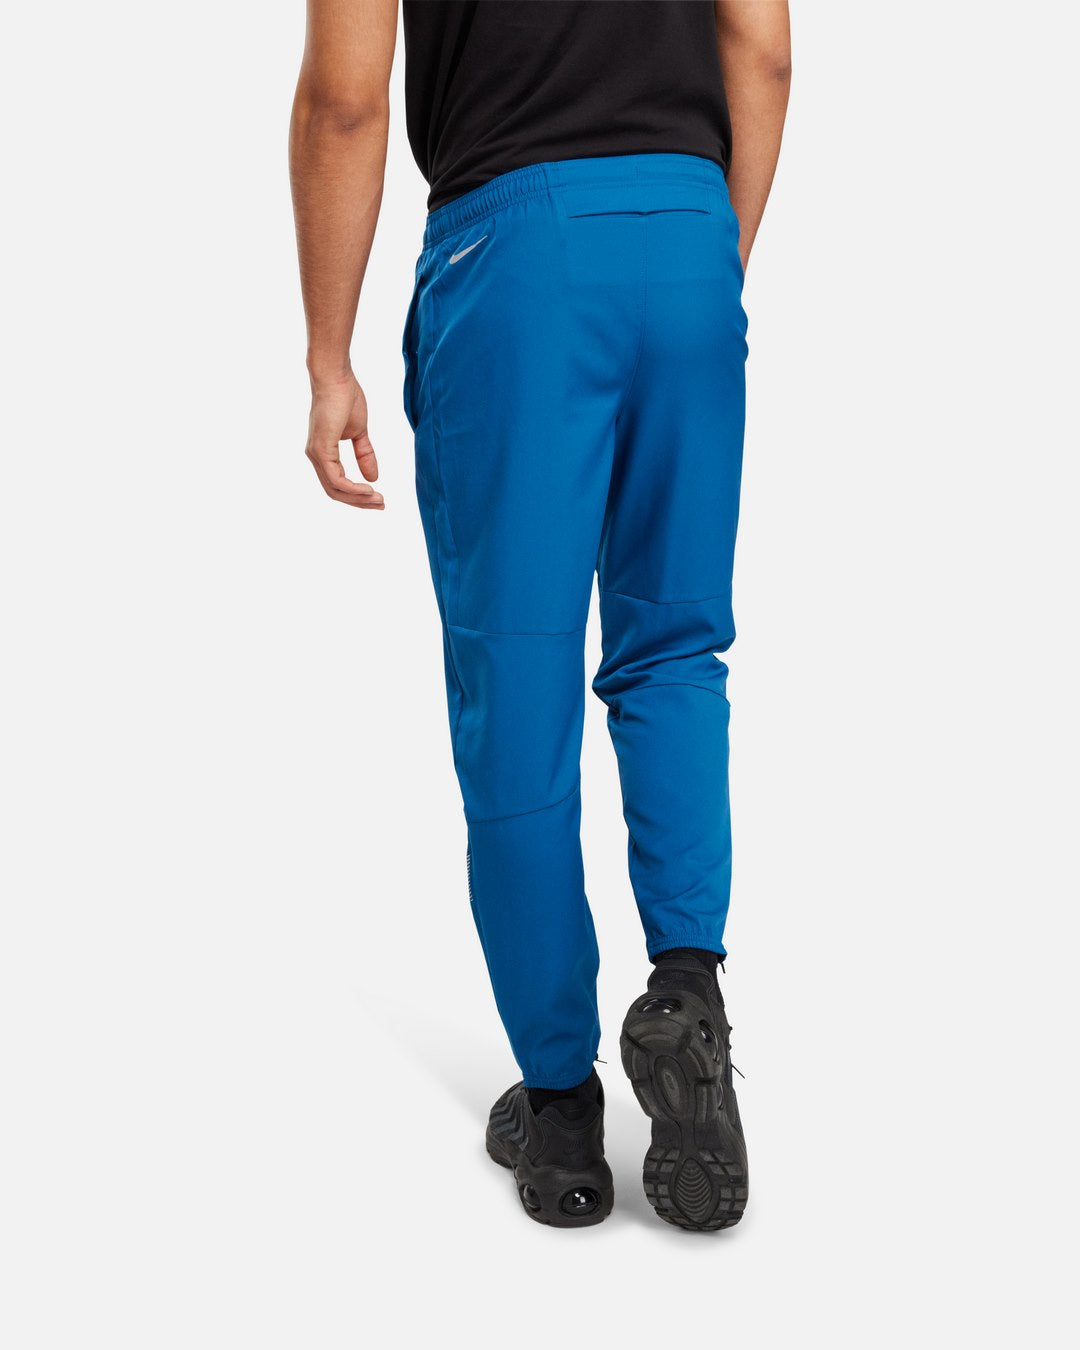 Pantalon Nike Challenger Flash - Bleu